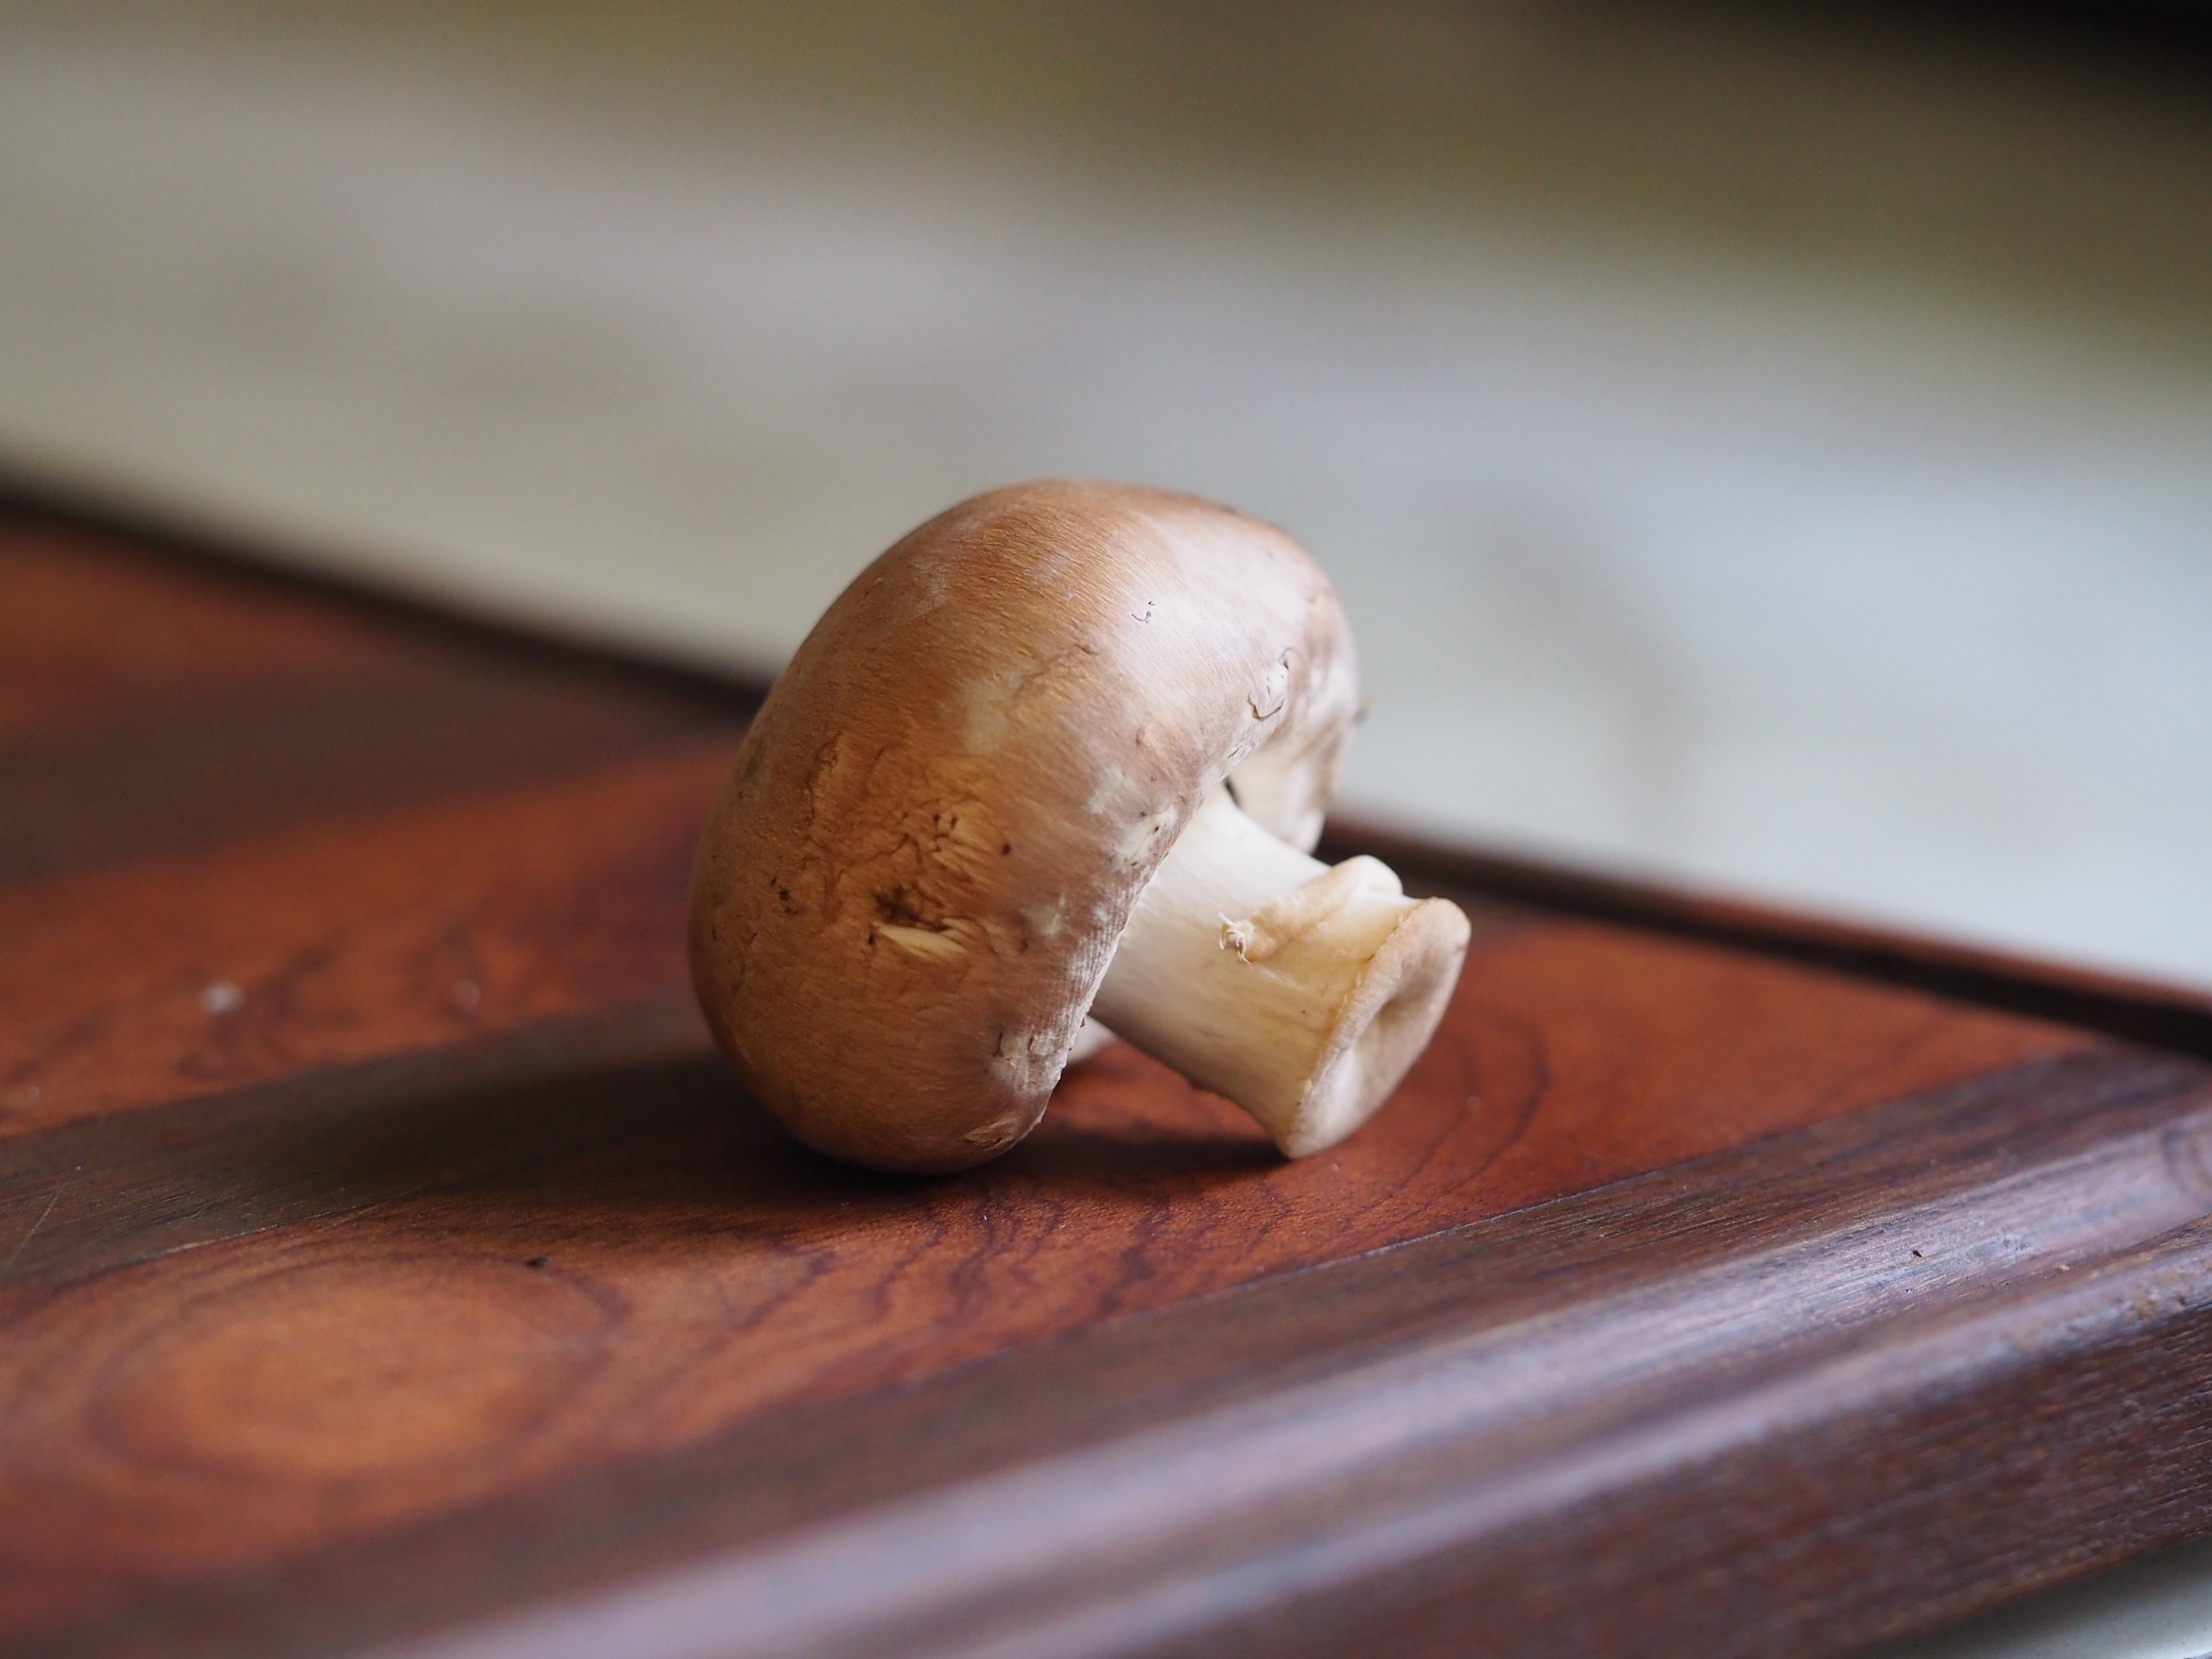 bella mushroom on a cutting board